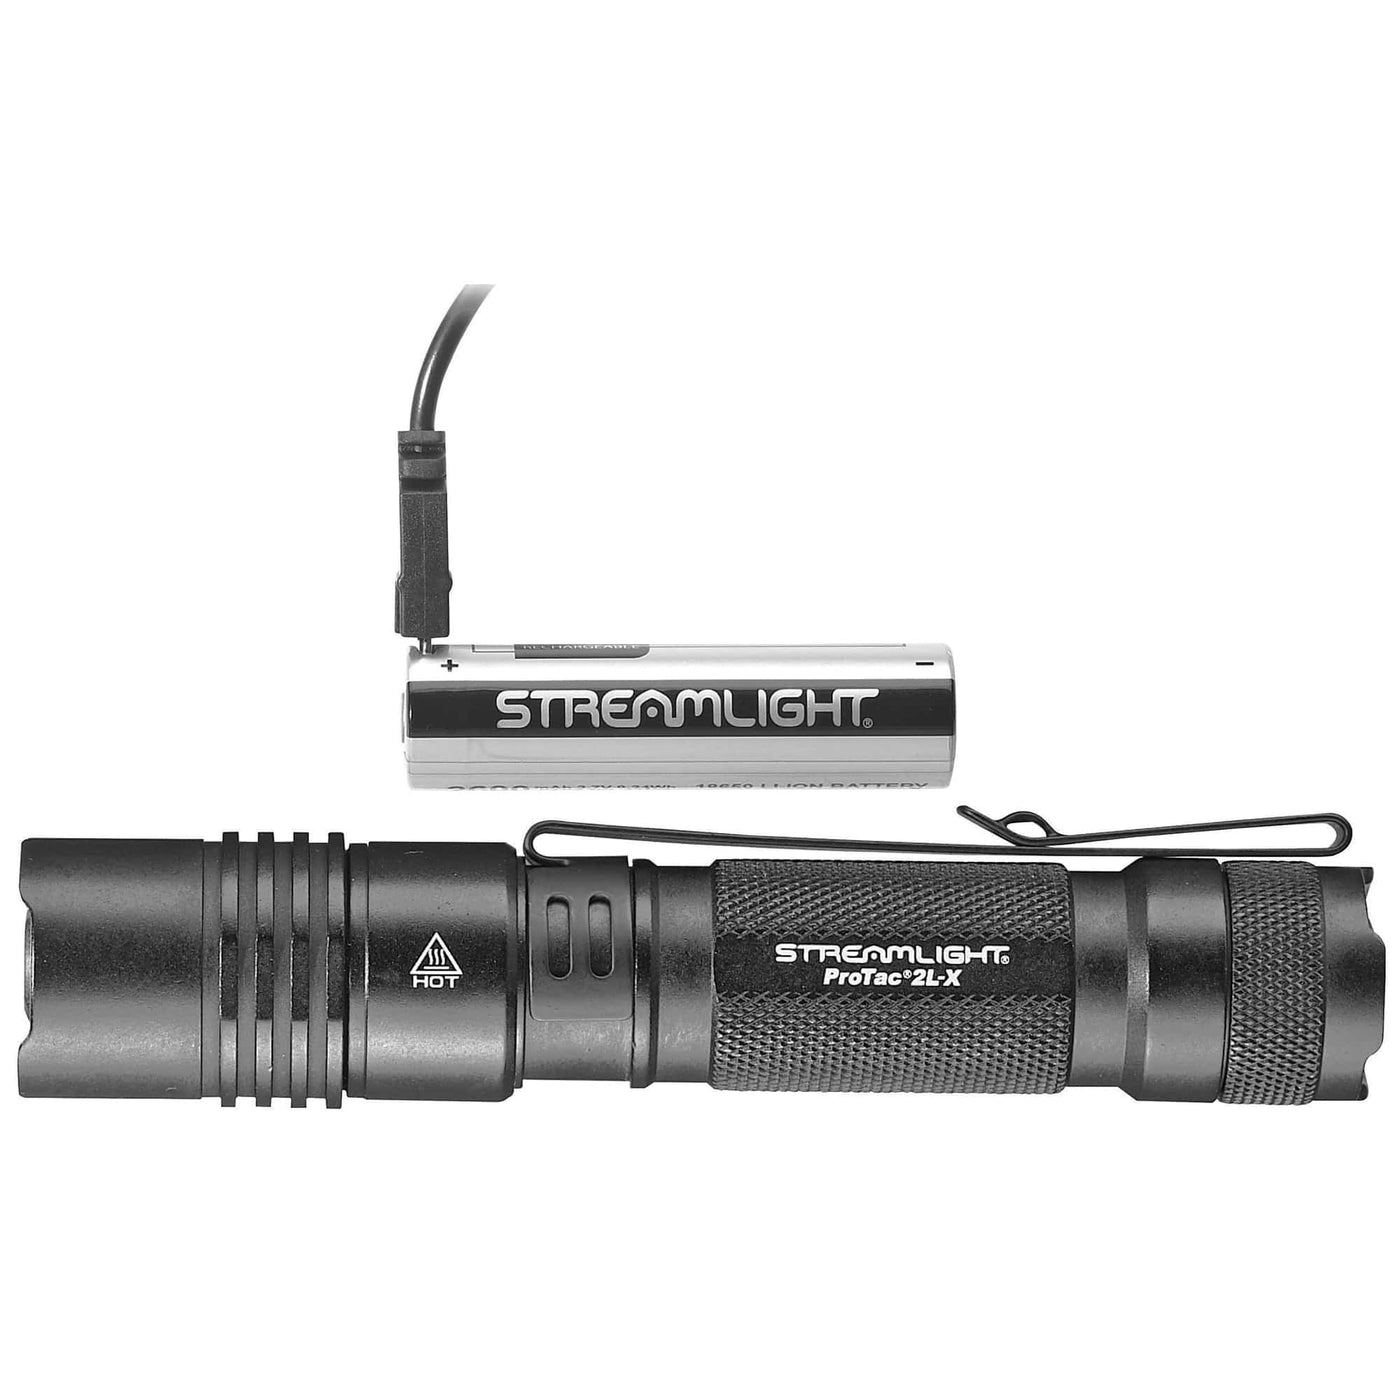 Streamlight Streamlight Pro-tac 2l-x Usb - Light White Led W/ Usb Cord Flashlights & Batteries